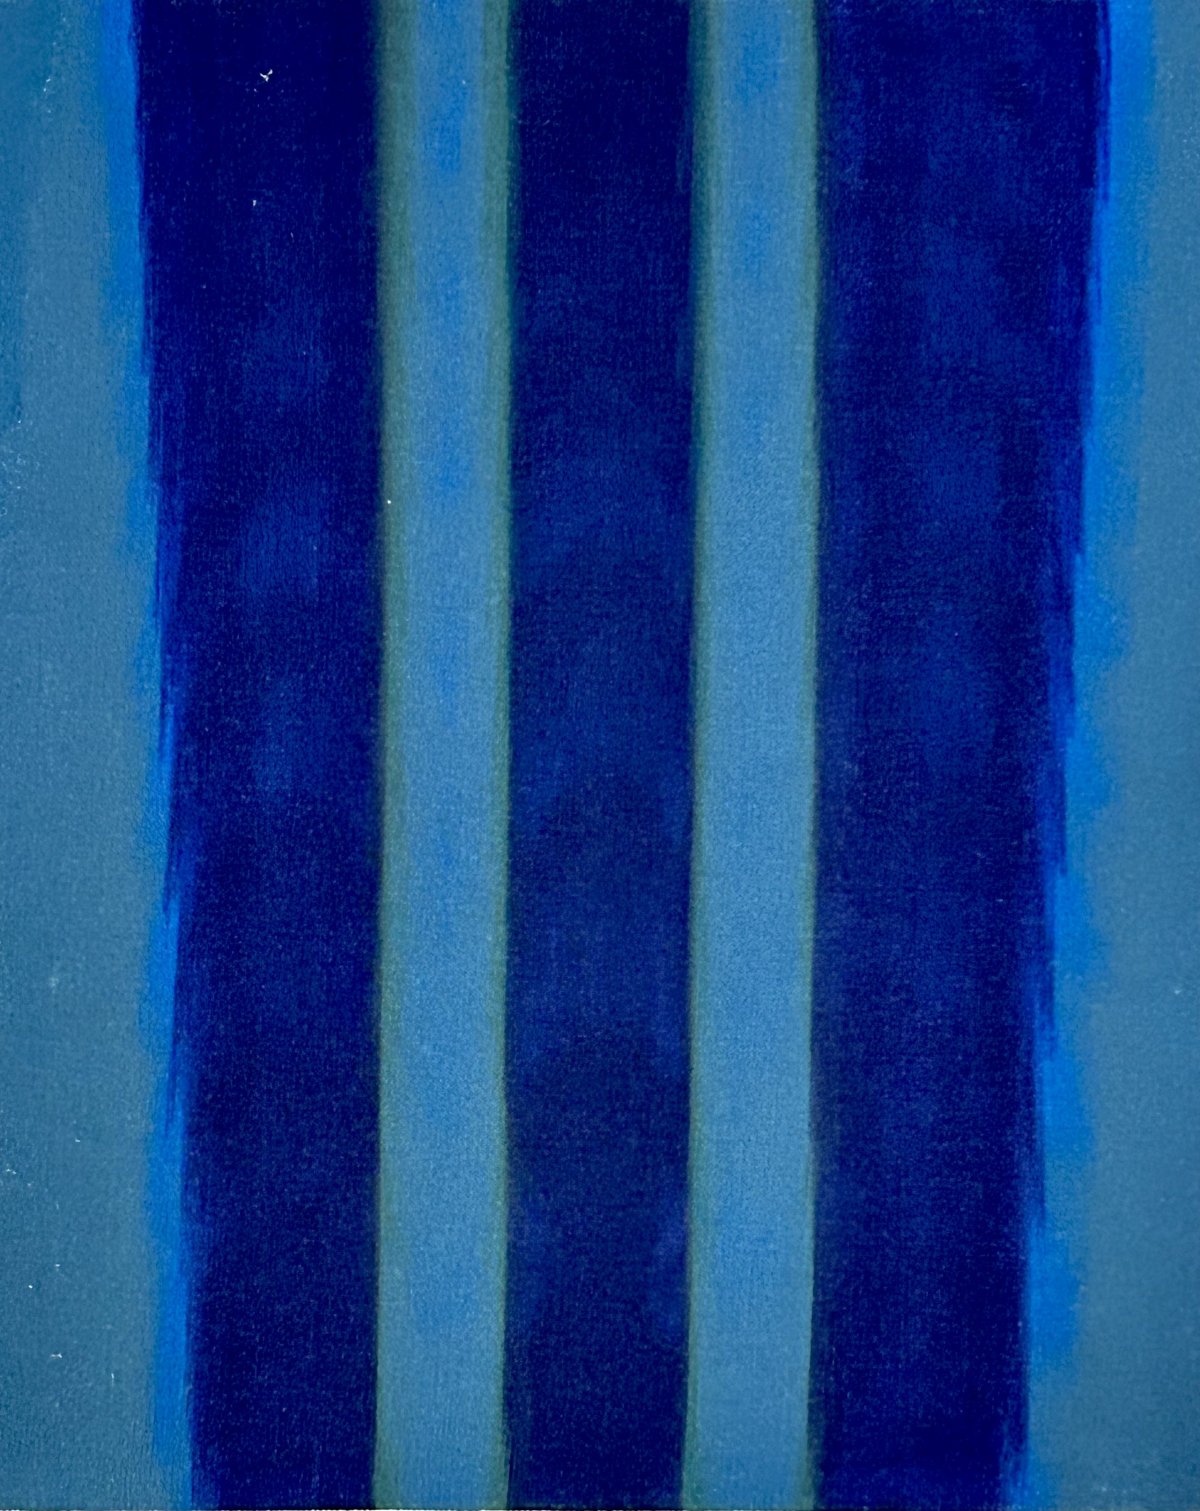 Gene Hedge, Untitled, 1967 